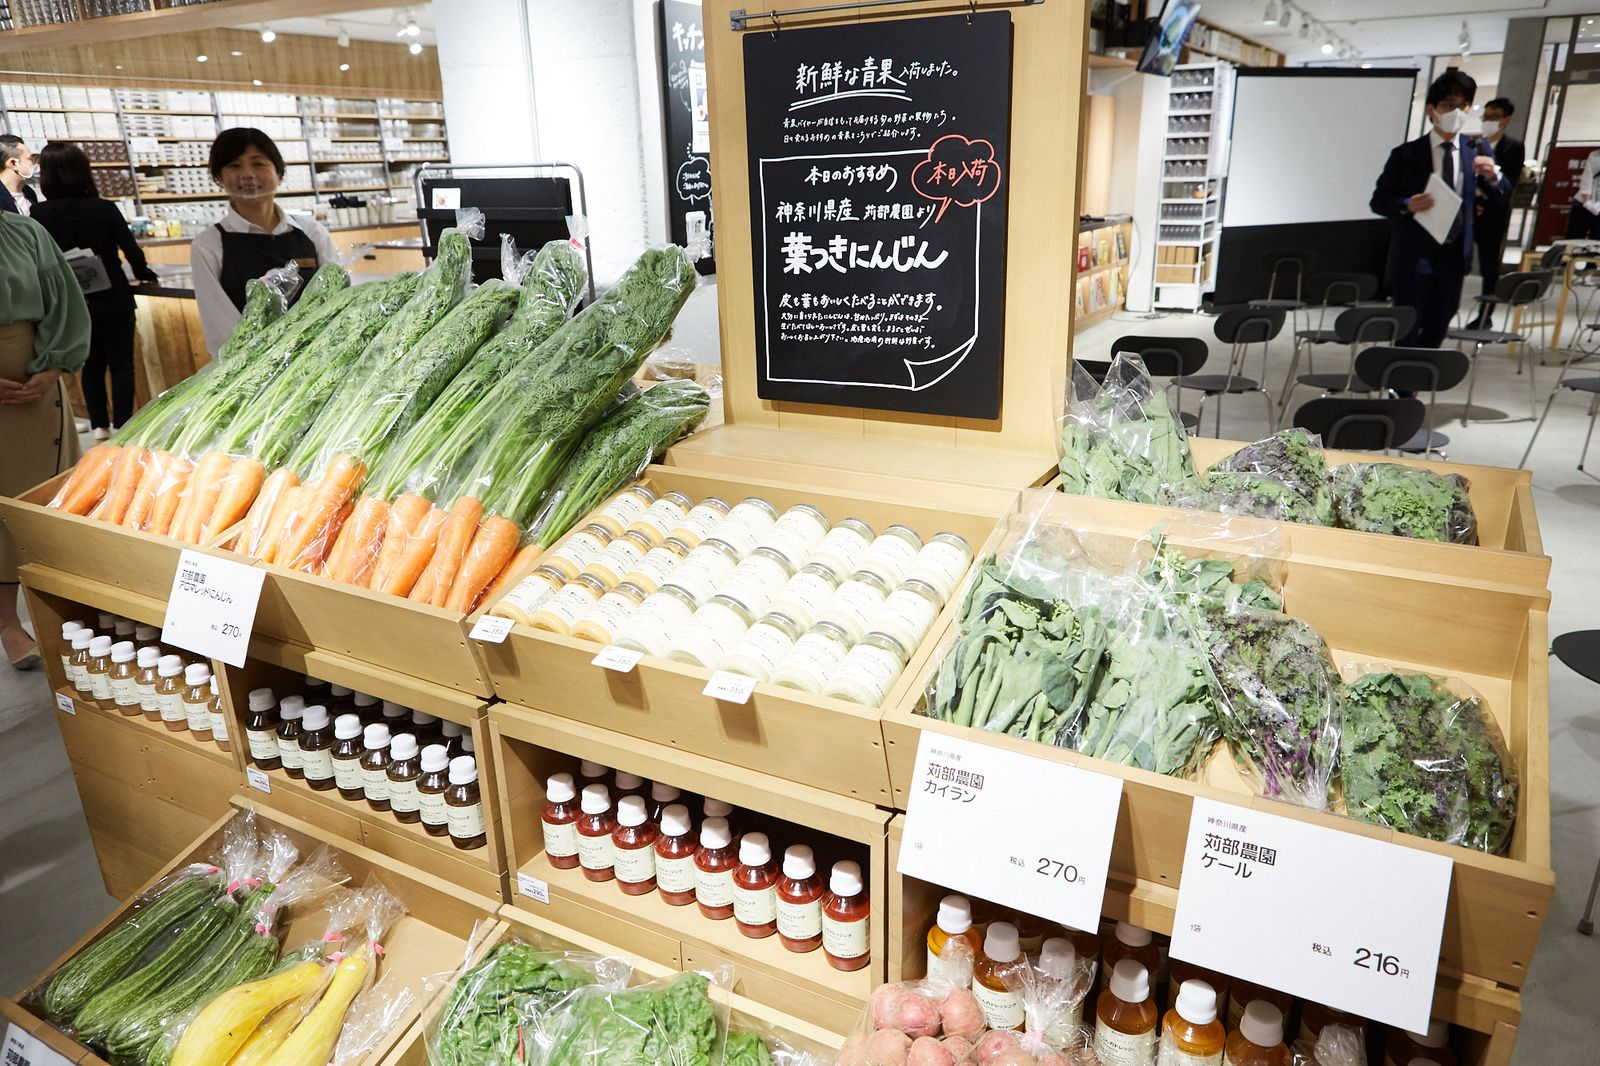 無印良品 が横浜市と連携し 地域の困りごとを解決 関東初のスーパー併設店がオープン Wwdjapan